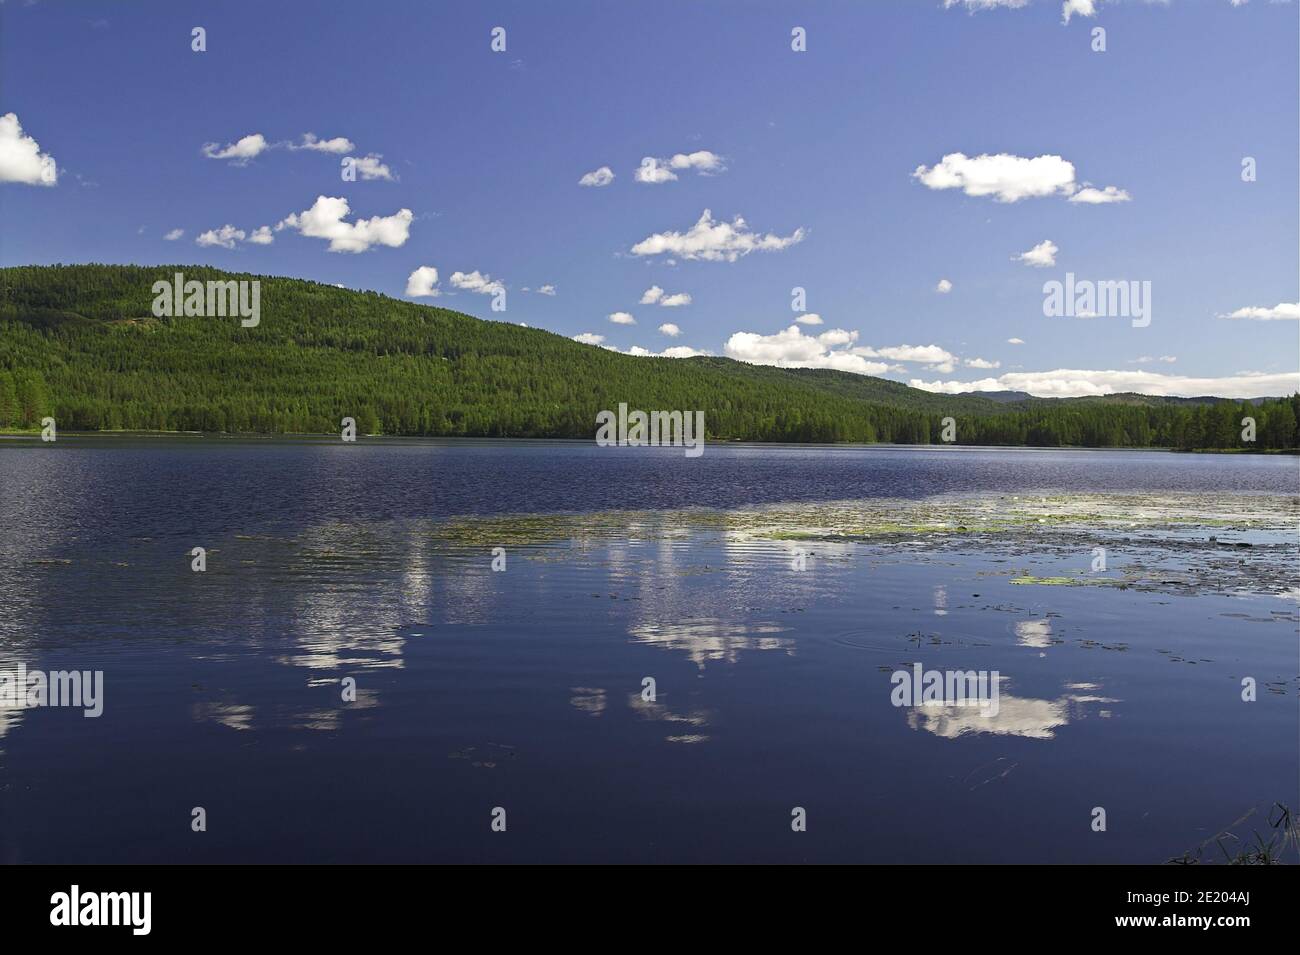 Heddal, Norway, Norwegen; Lakes and forests - a typical landscape of southern Norway. Seen und Wälder - eine typische Landschaft Südnorwegens. Stock Photo